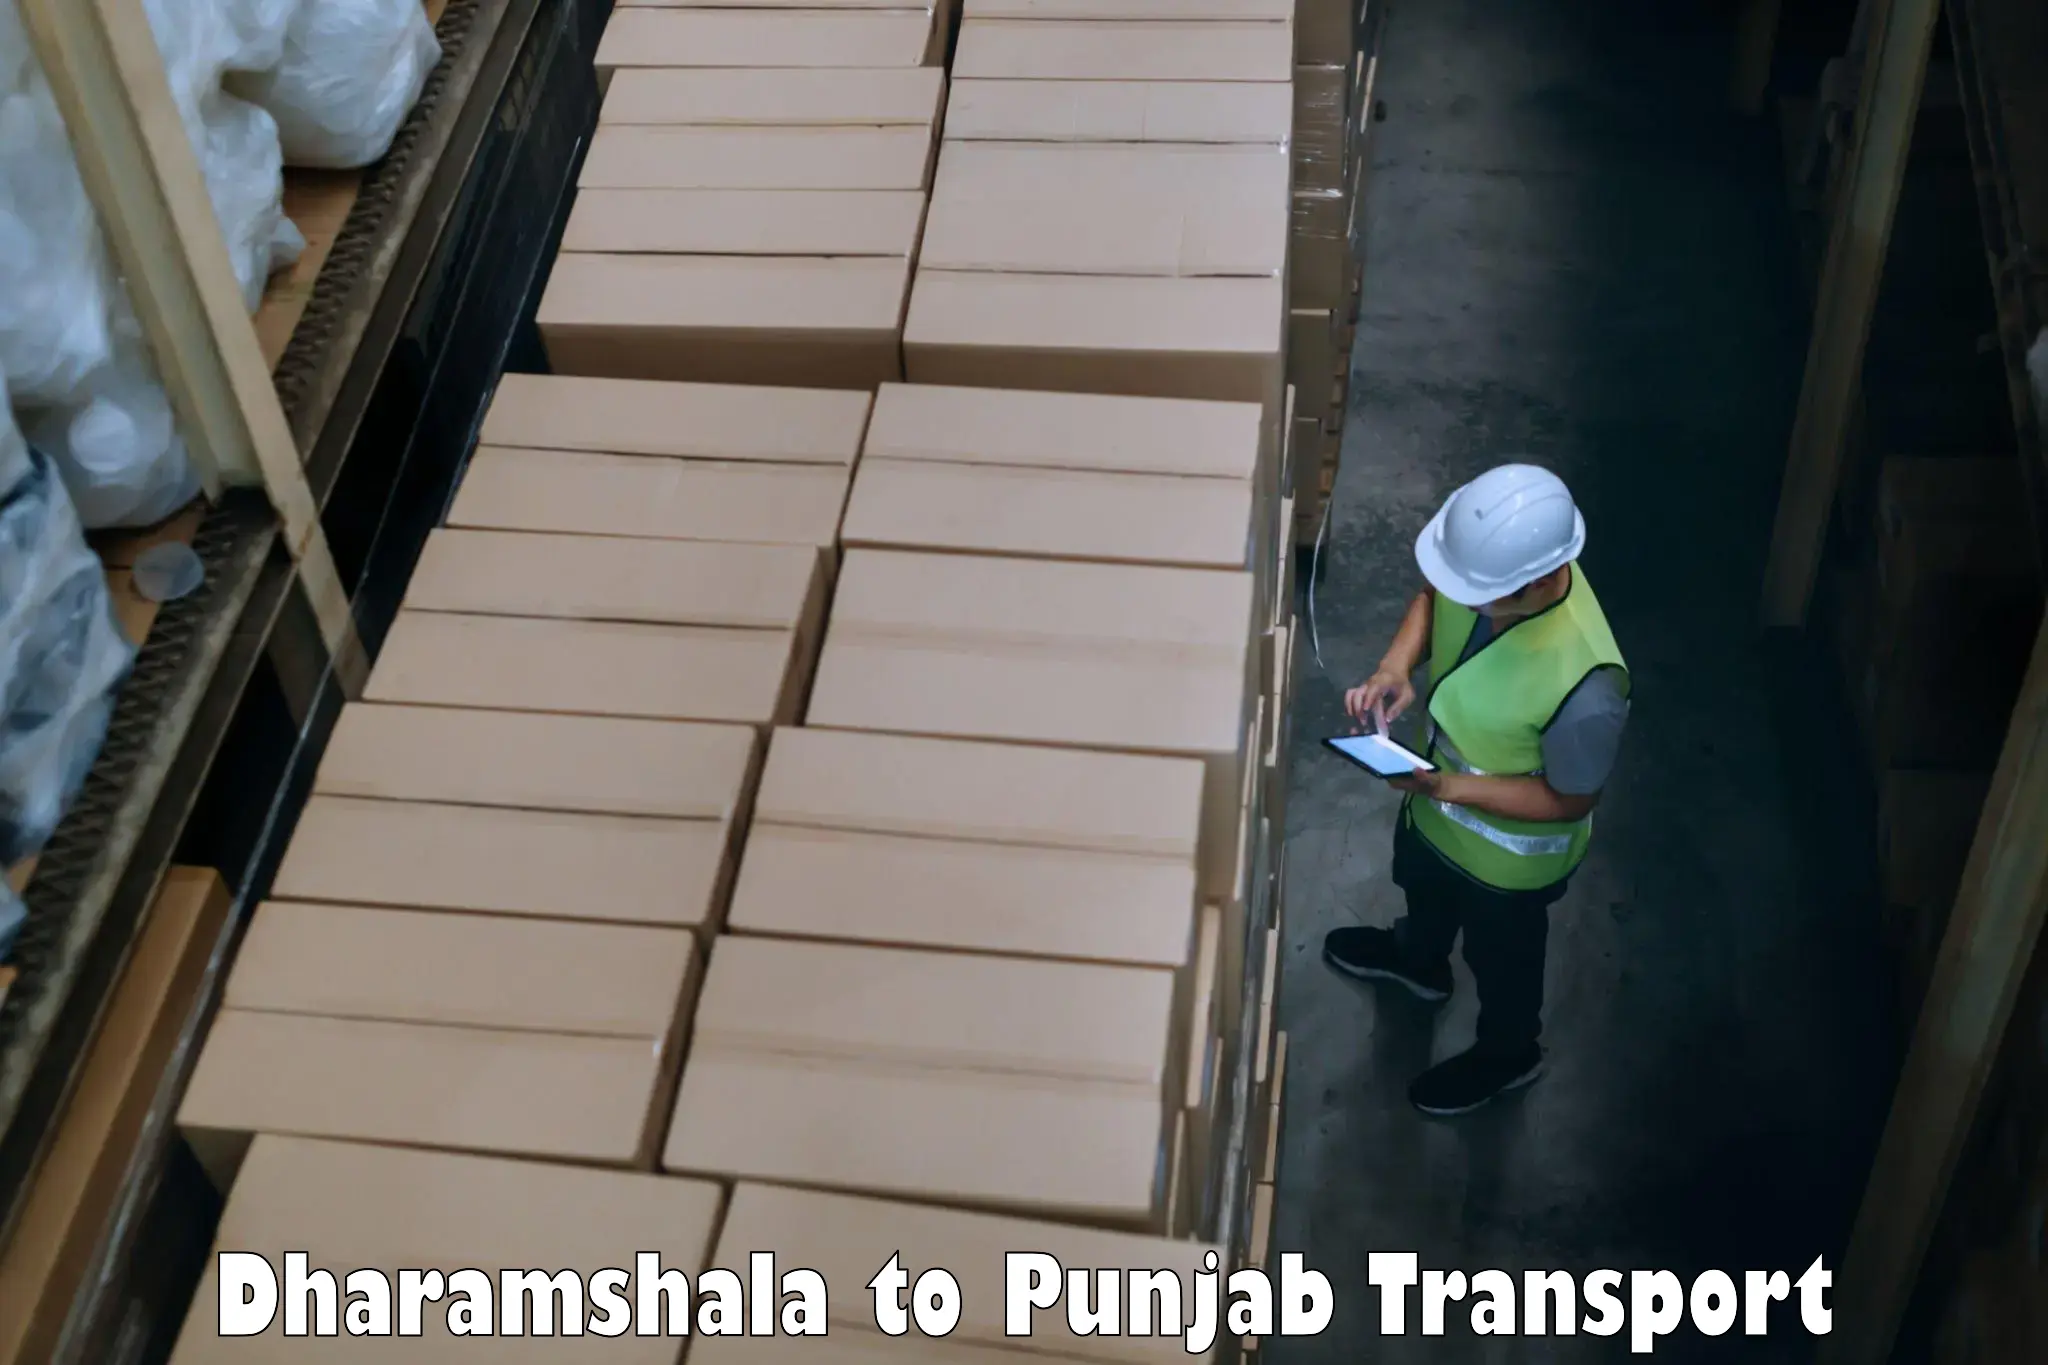 Road transport online services Dharamshala to Rupnagar